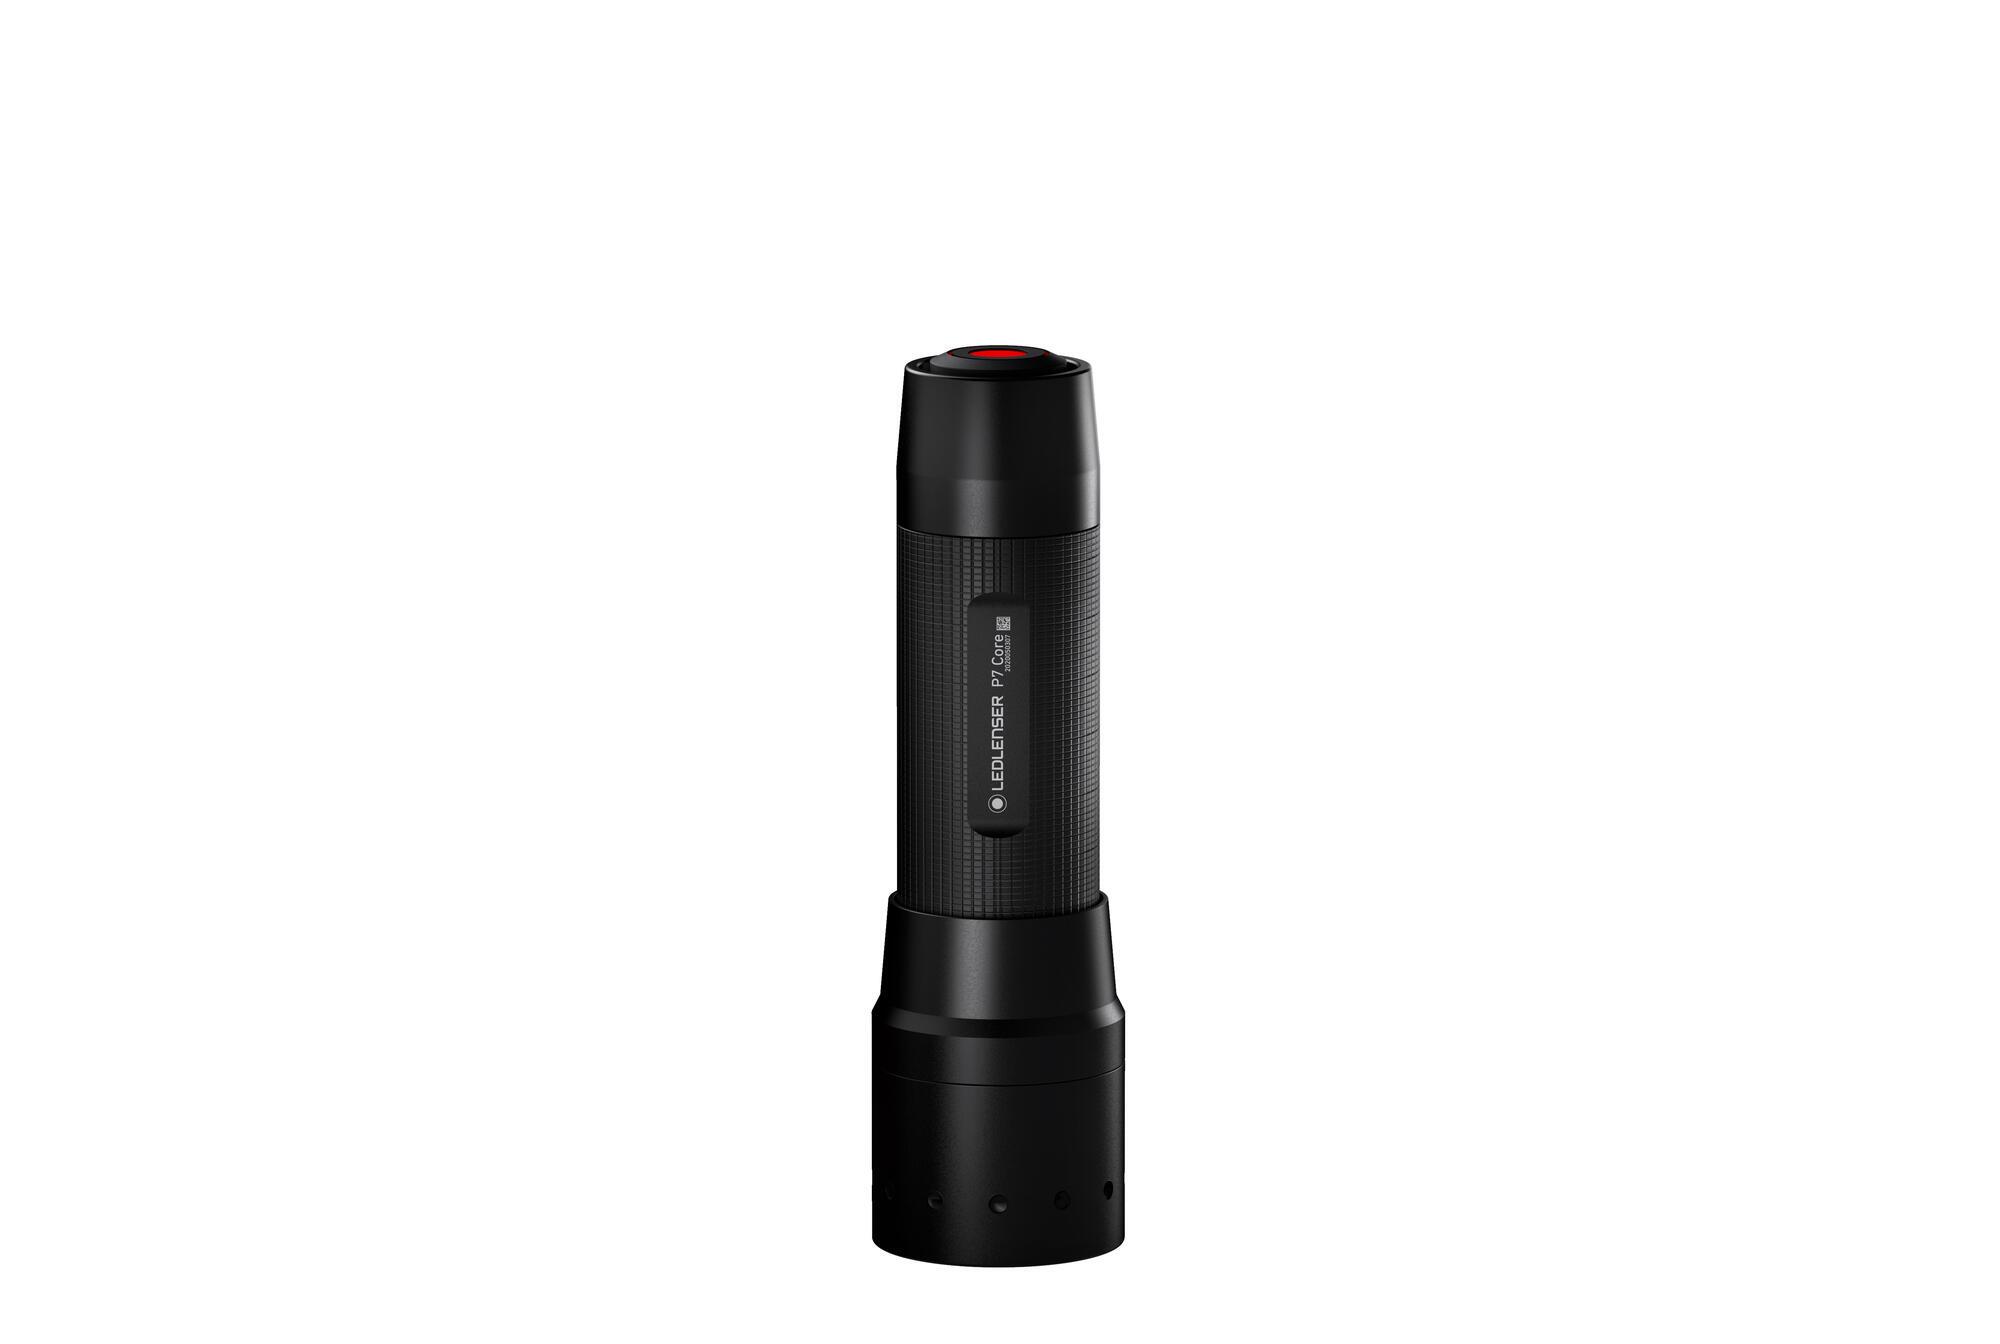 Køb LED Lenser P7 - Core - Tilbud: 549,00 - VAGT & SECURITY / / LED